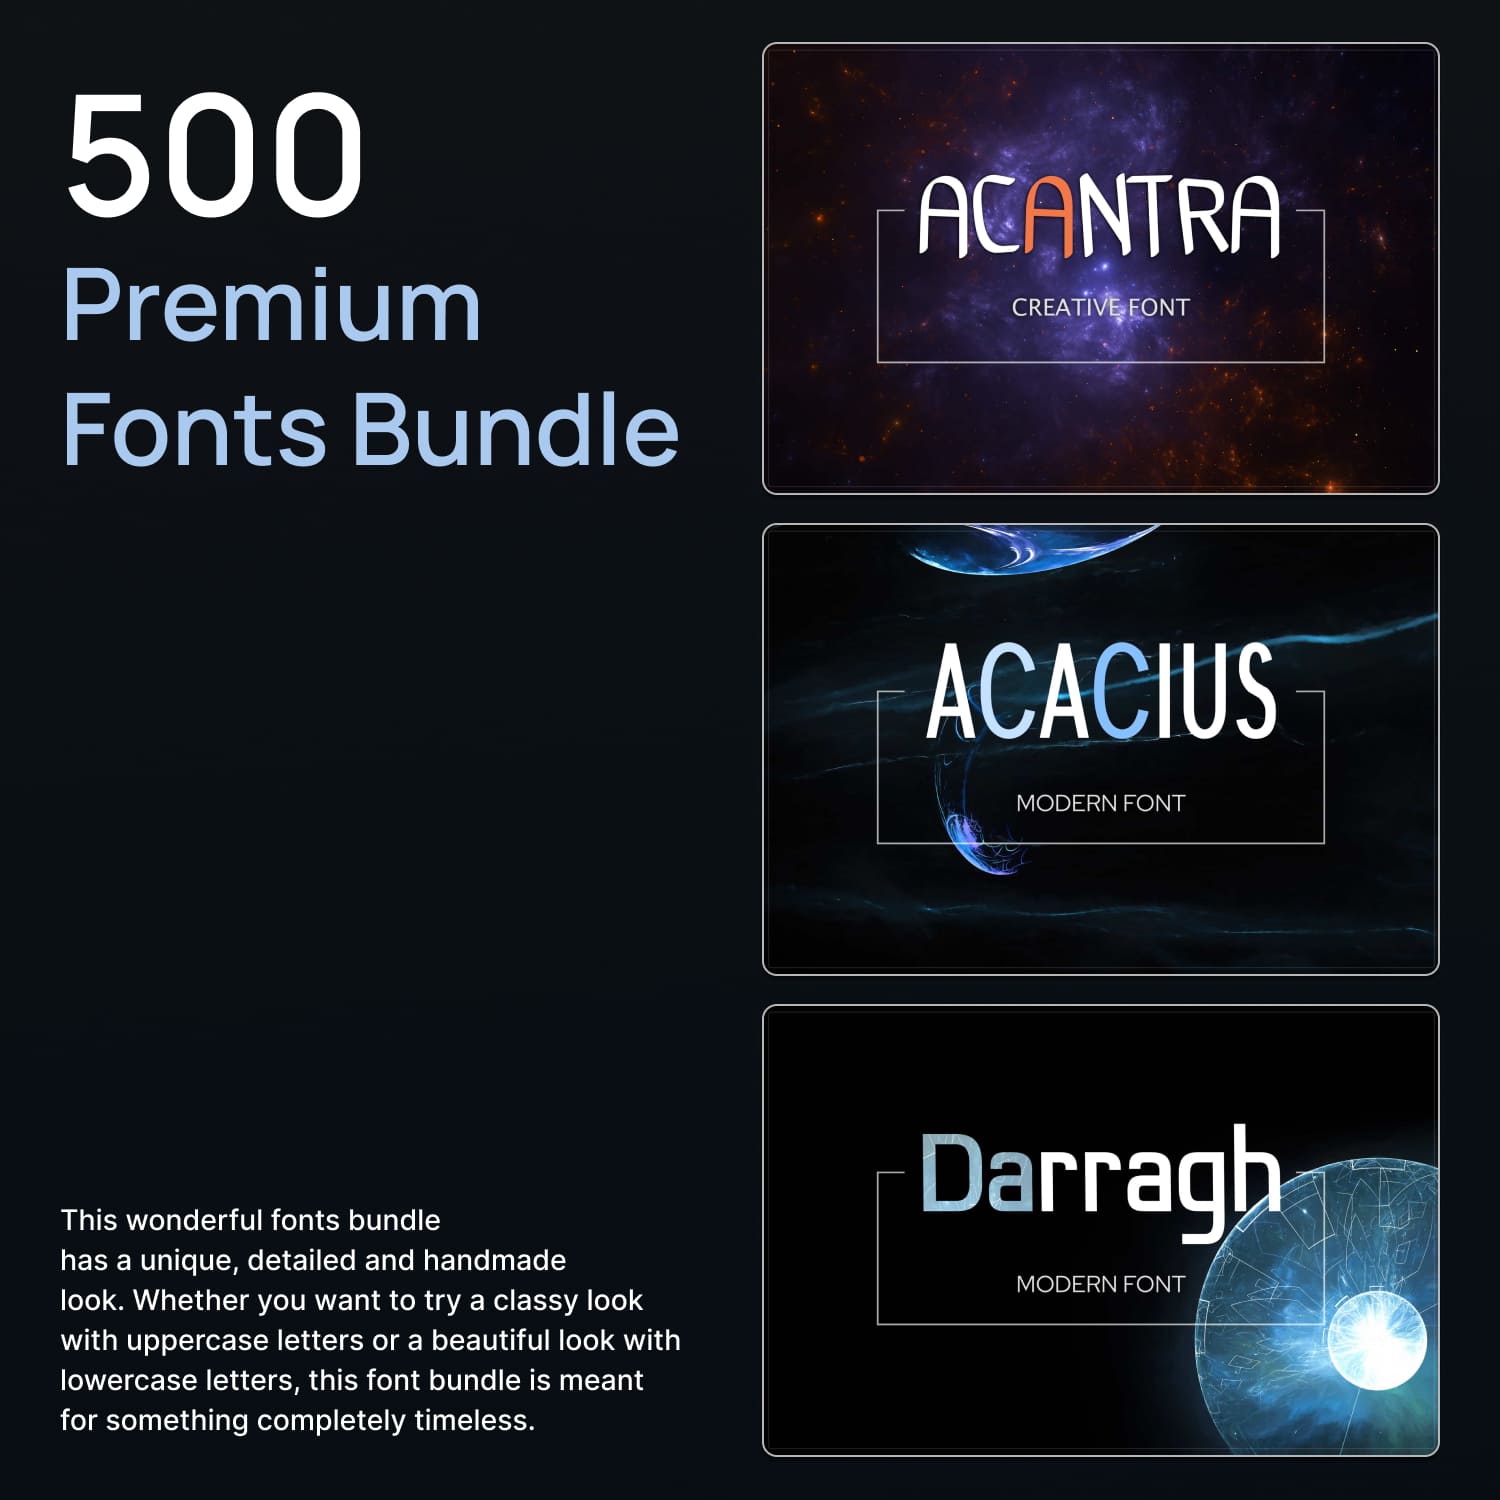 500 Premium Fonts Bundle.